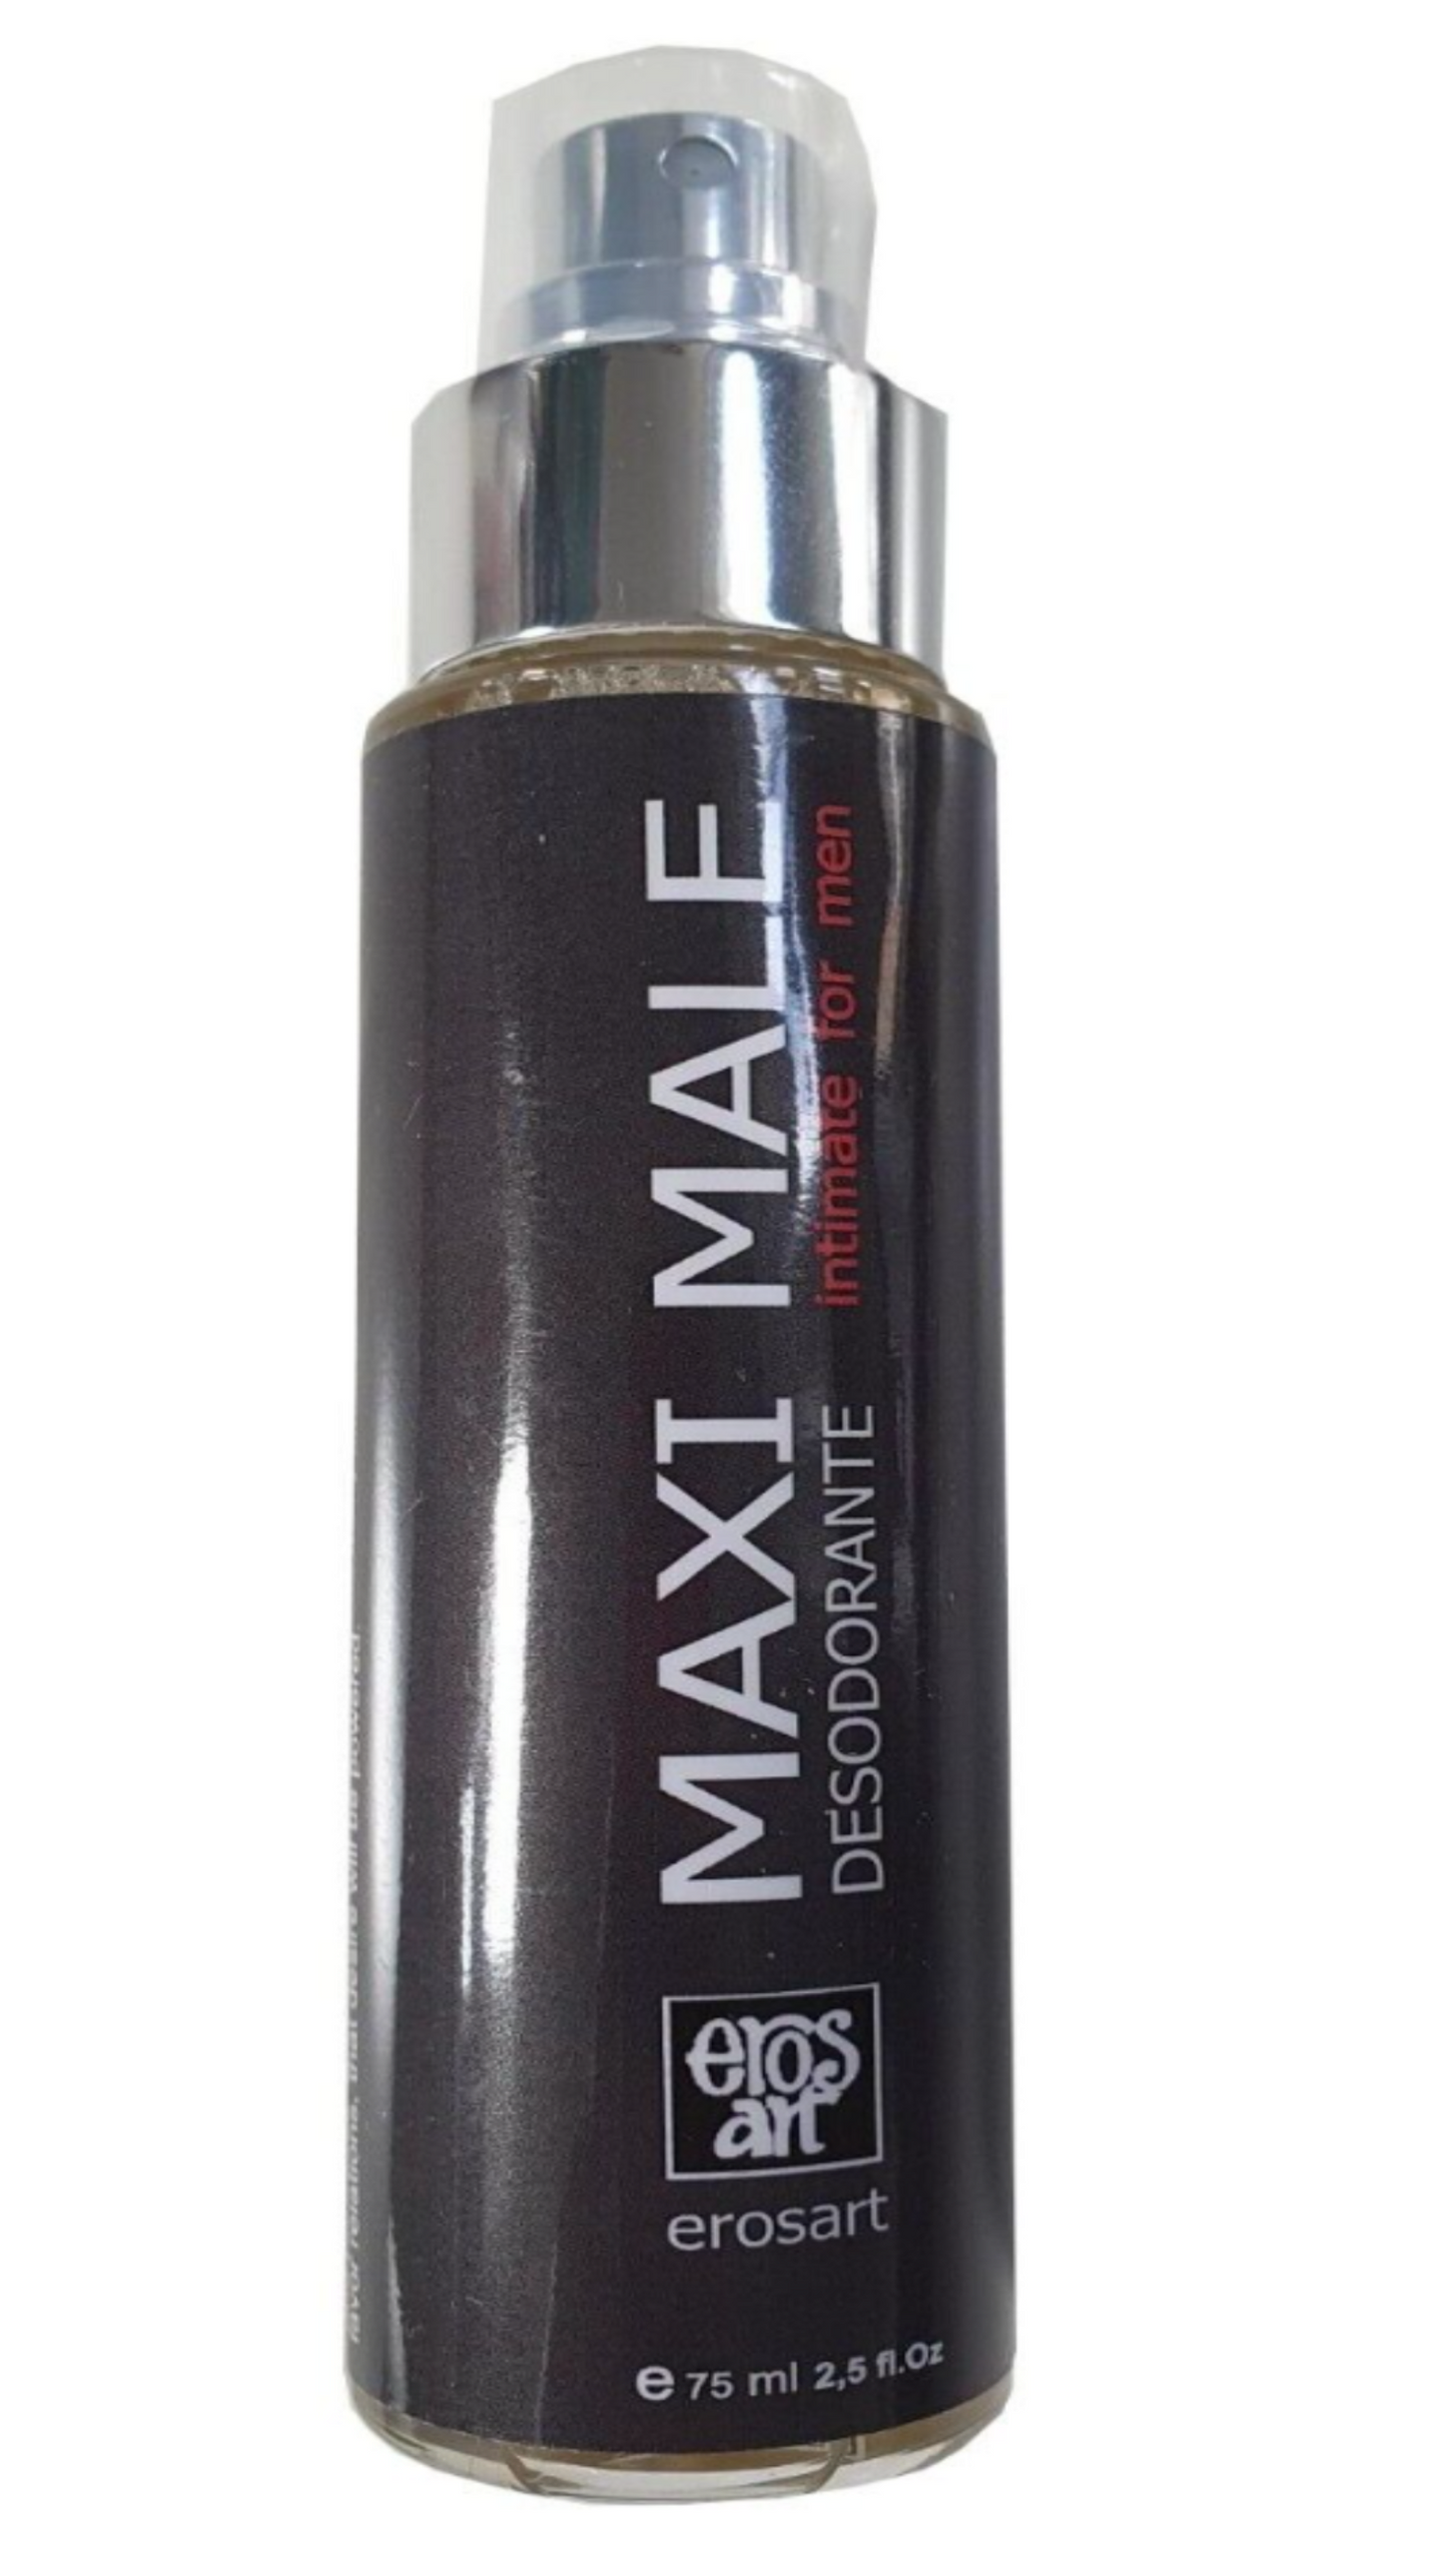 Intim-Deodorant für den Mann mit Pheromonen, Erregung, sexy Lockstoff mit Pheromonen, 60 ml 